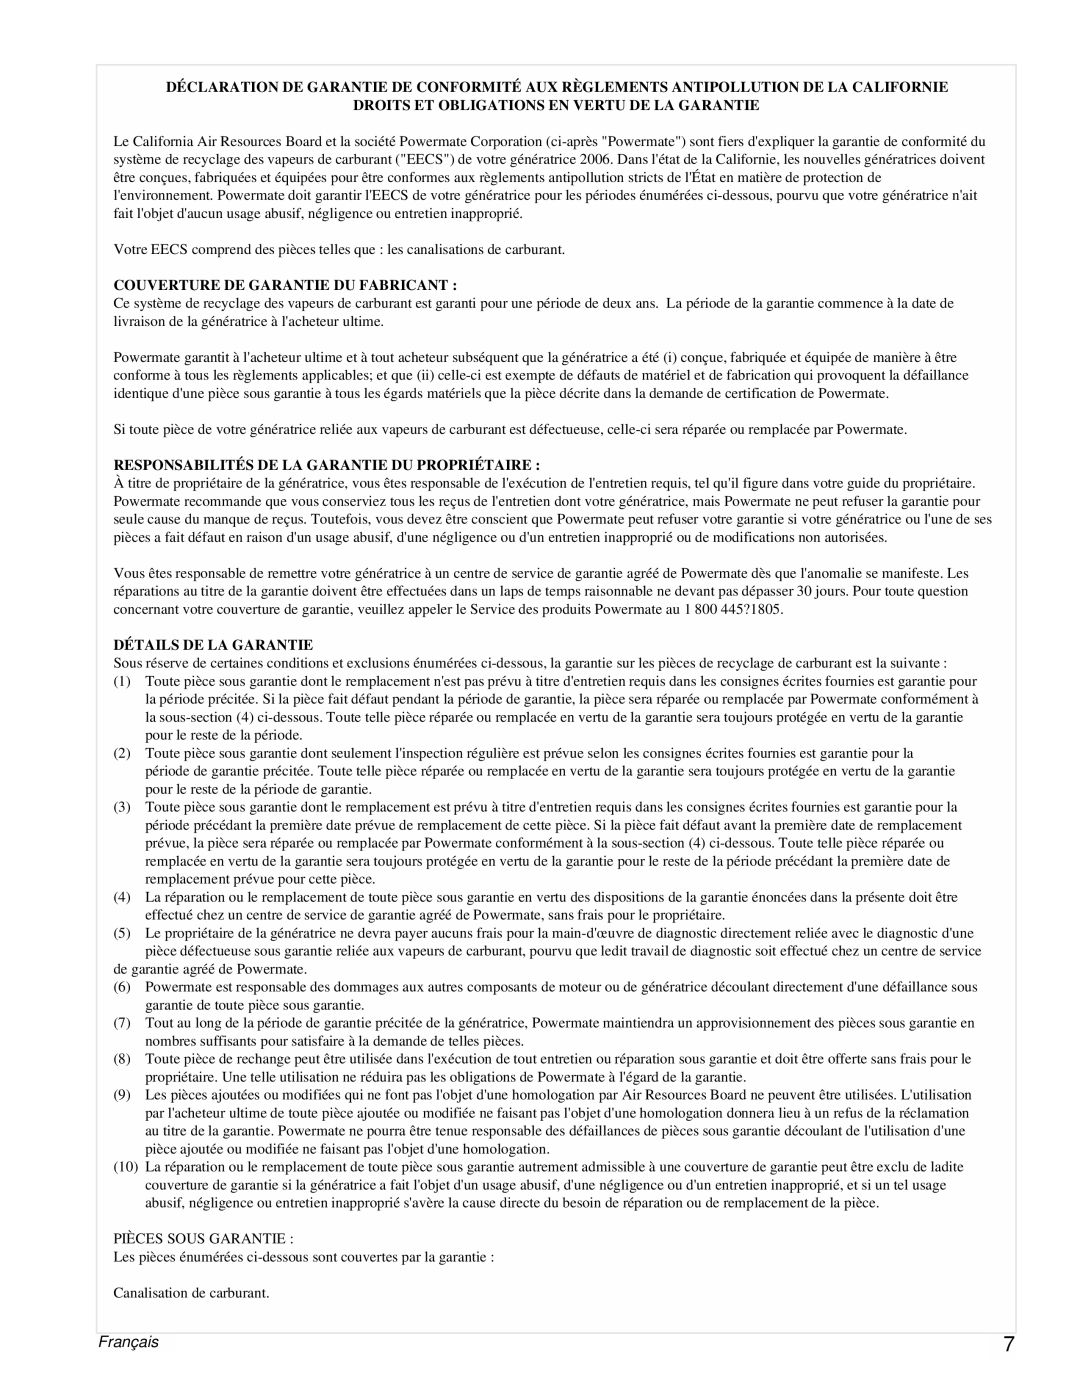 Powermate PMC543250 manual Français, Droits Et Obligations En Vertu De La Garantie, Couverture De Garantie Du Fabricant 